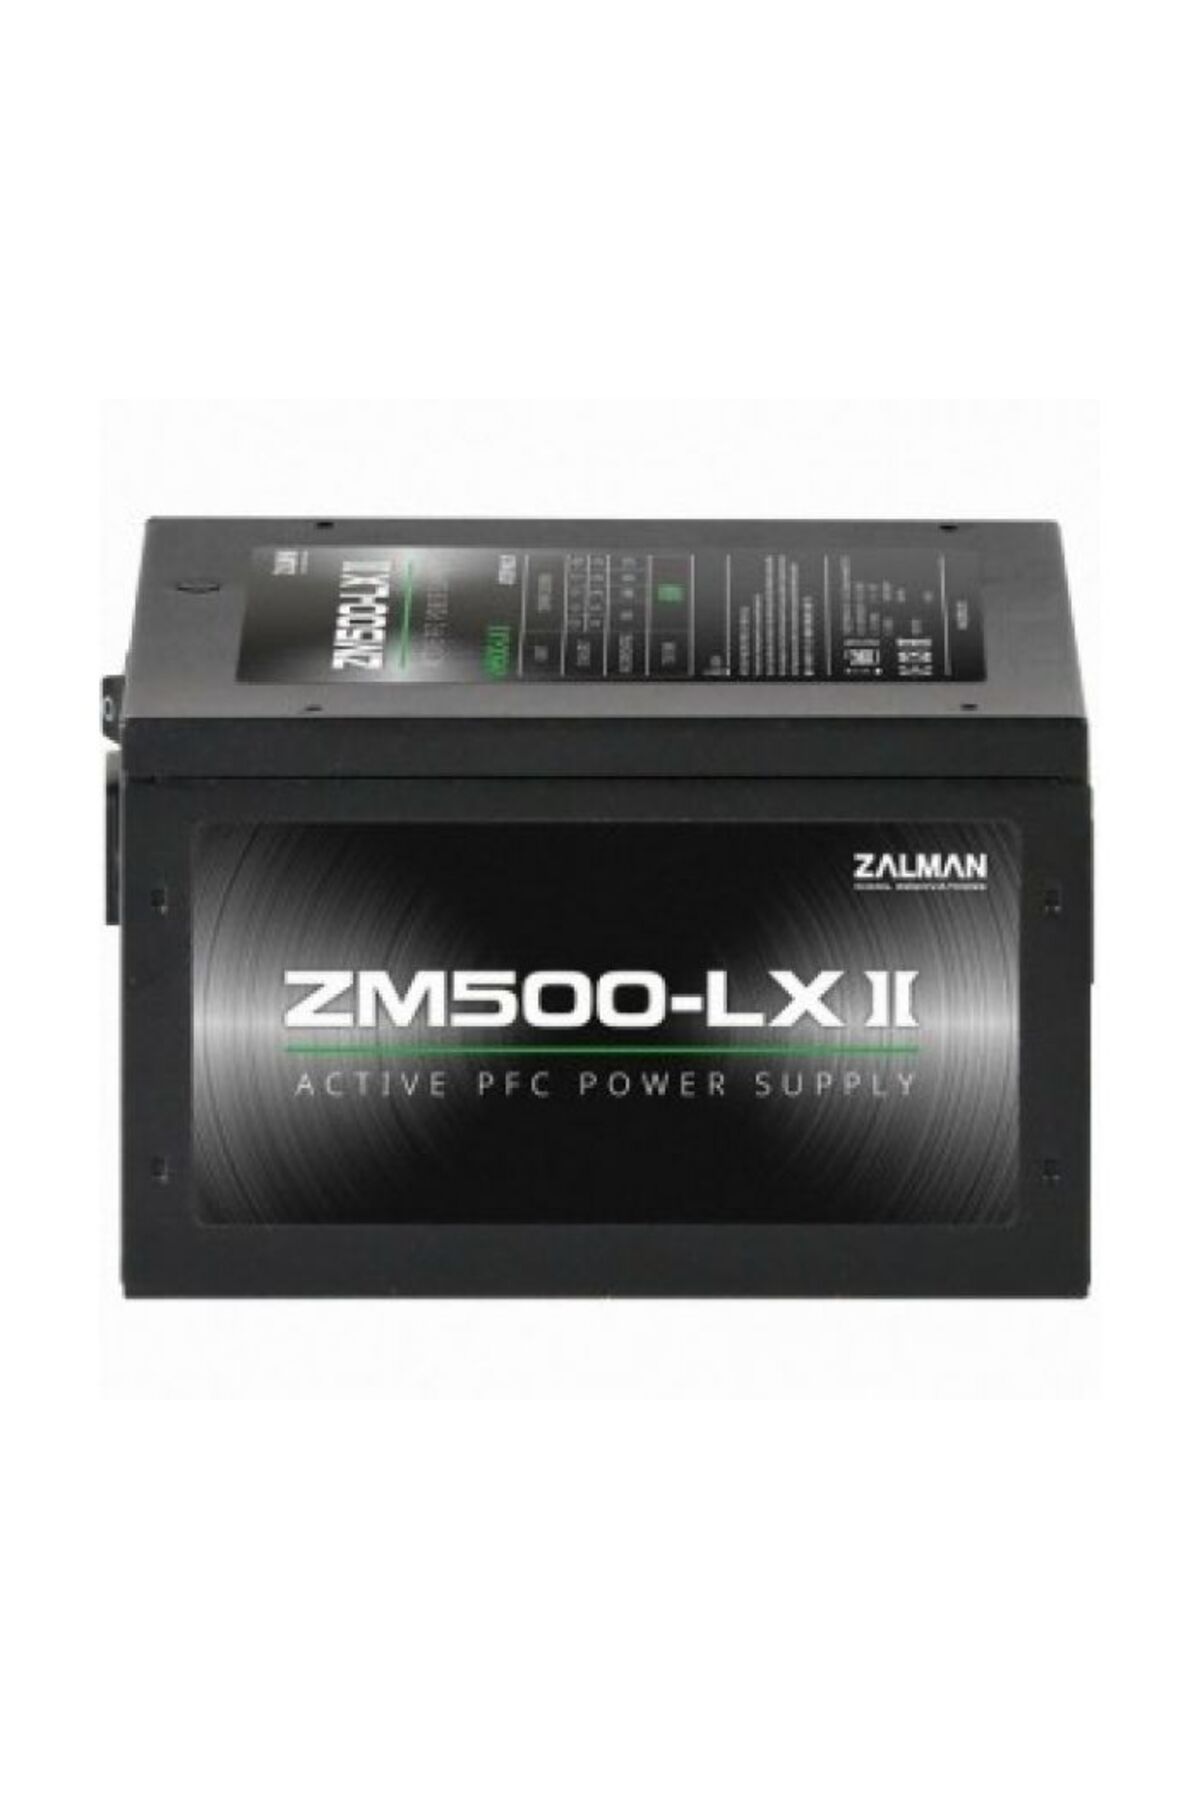 Zalman Zm500-lxıı 500w 120mm 80 Plus Power Supply (PSU)